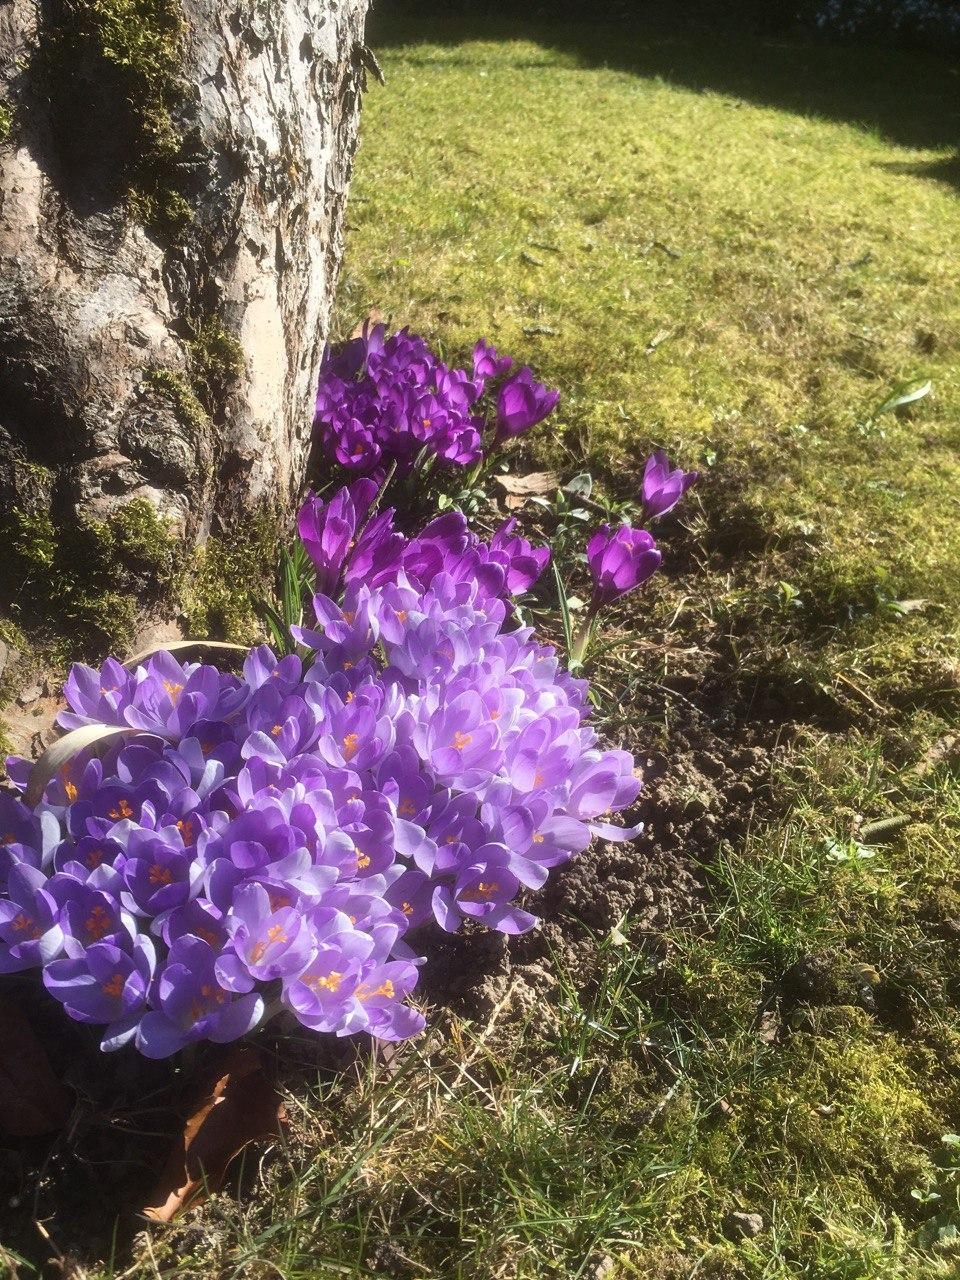 Im Garten ist schon der #Frühling eingezogen.

#Frühlingsblumen #Springmood #garten #frühlingsgarten #blumen #spring